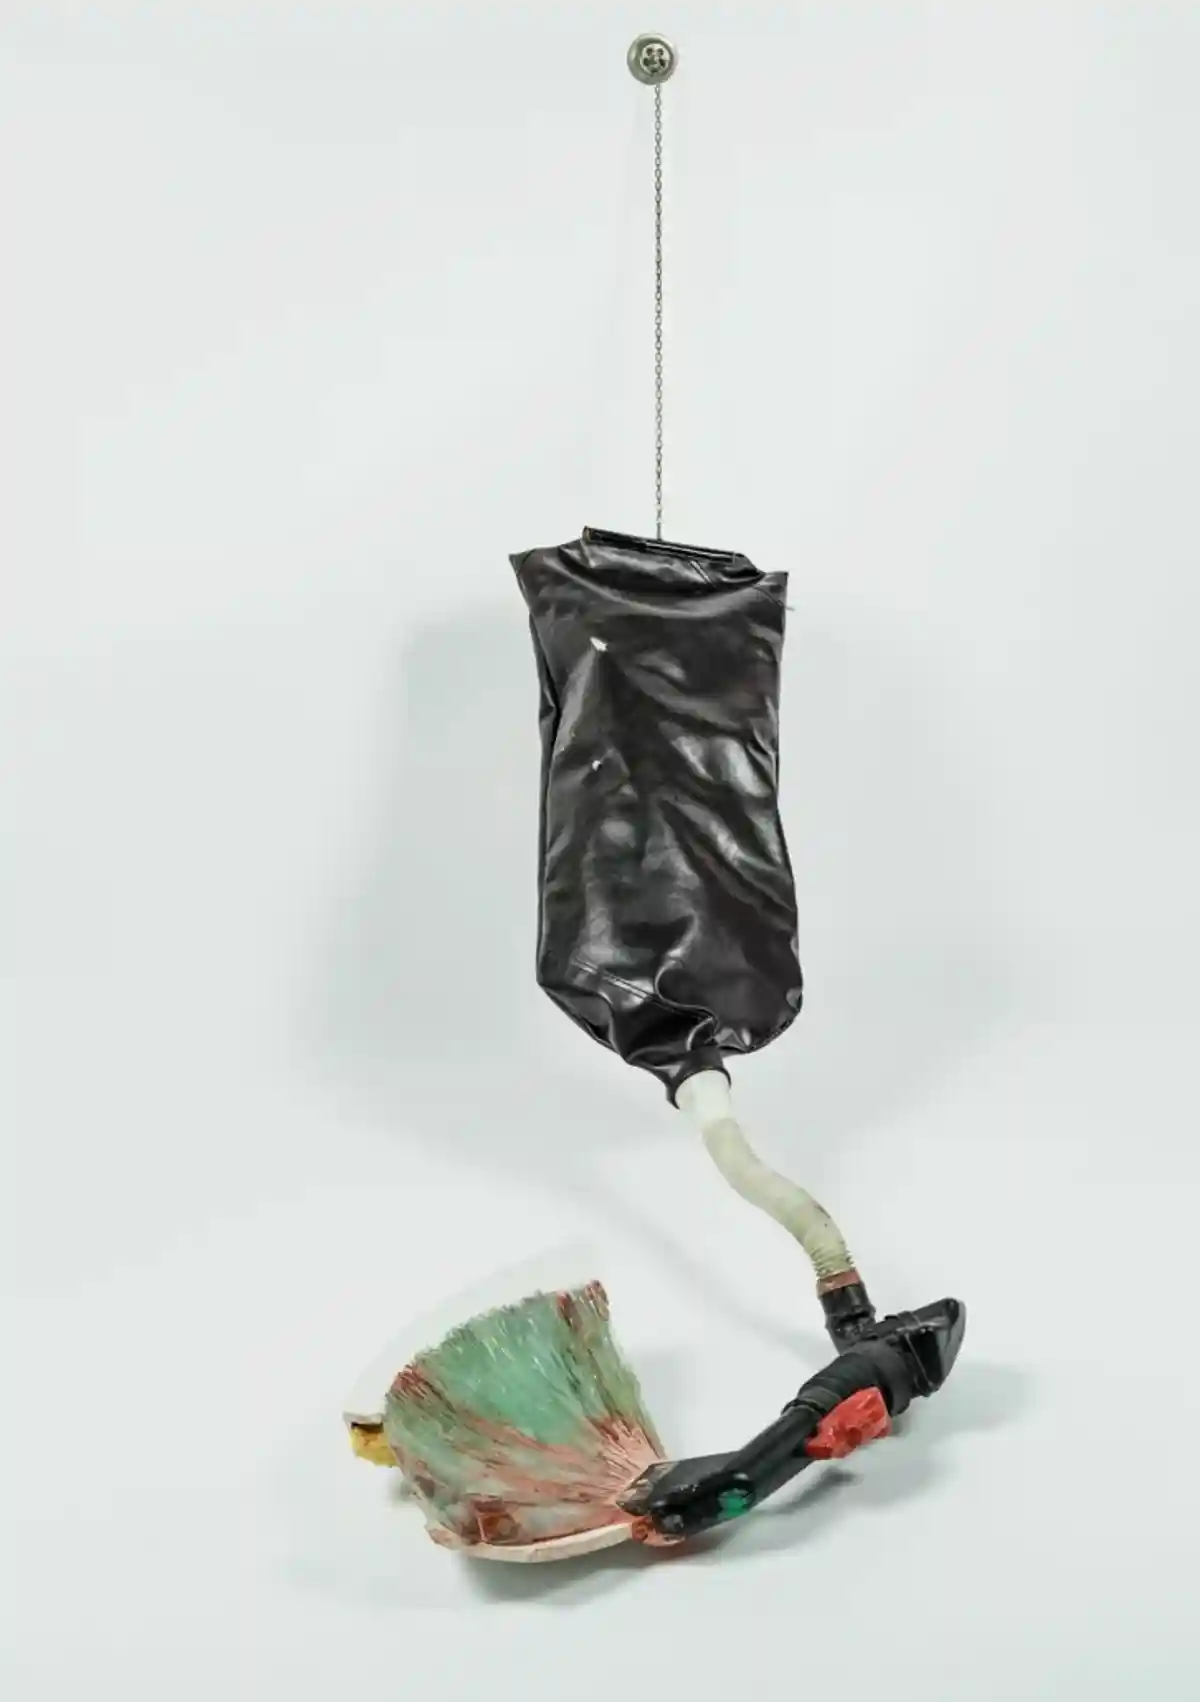 Один из объектов выставки: автор Гейл Матиас, «Уборщица» Фото: Rod Gonzalez / coburger-glaspreis.de